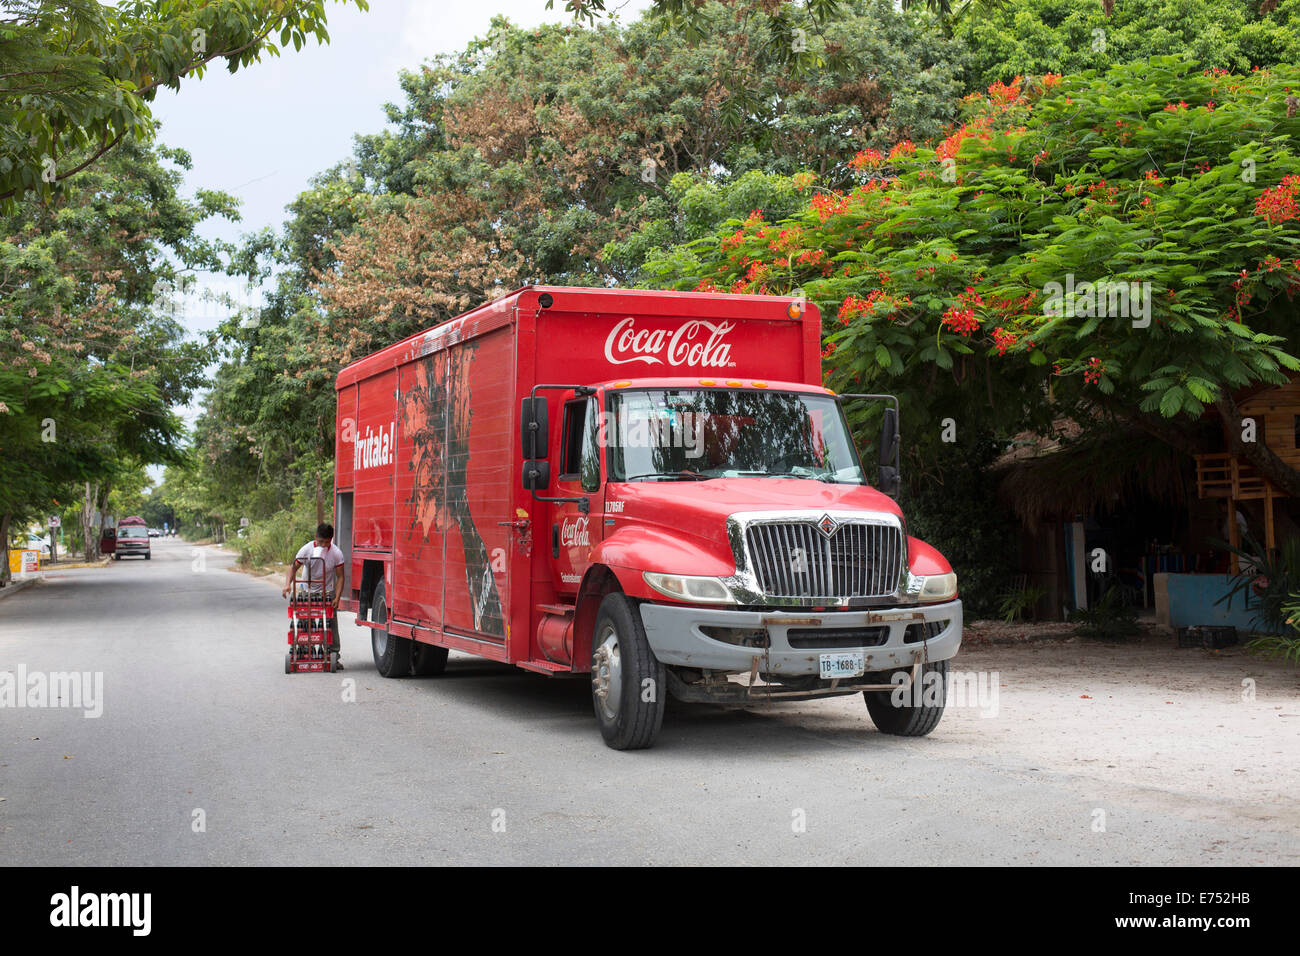 Coca Cola van delivering Mexico Stock Photo